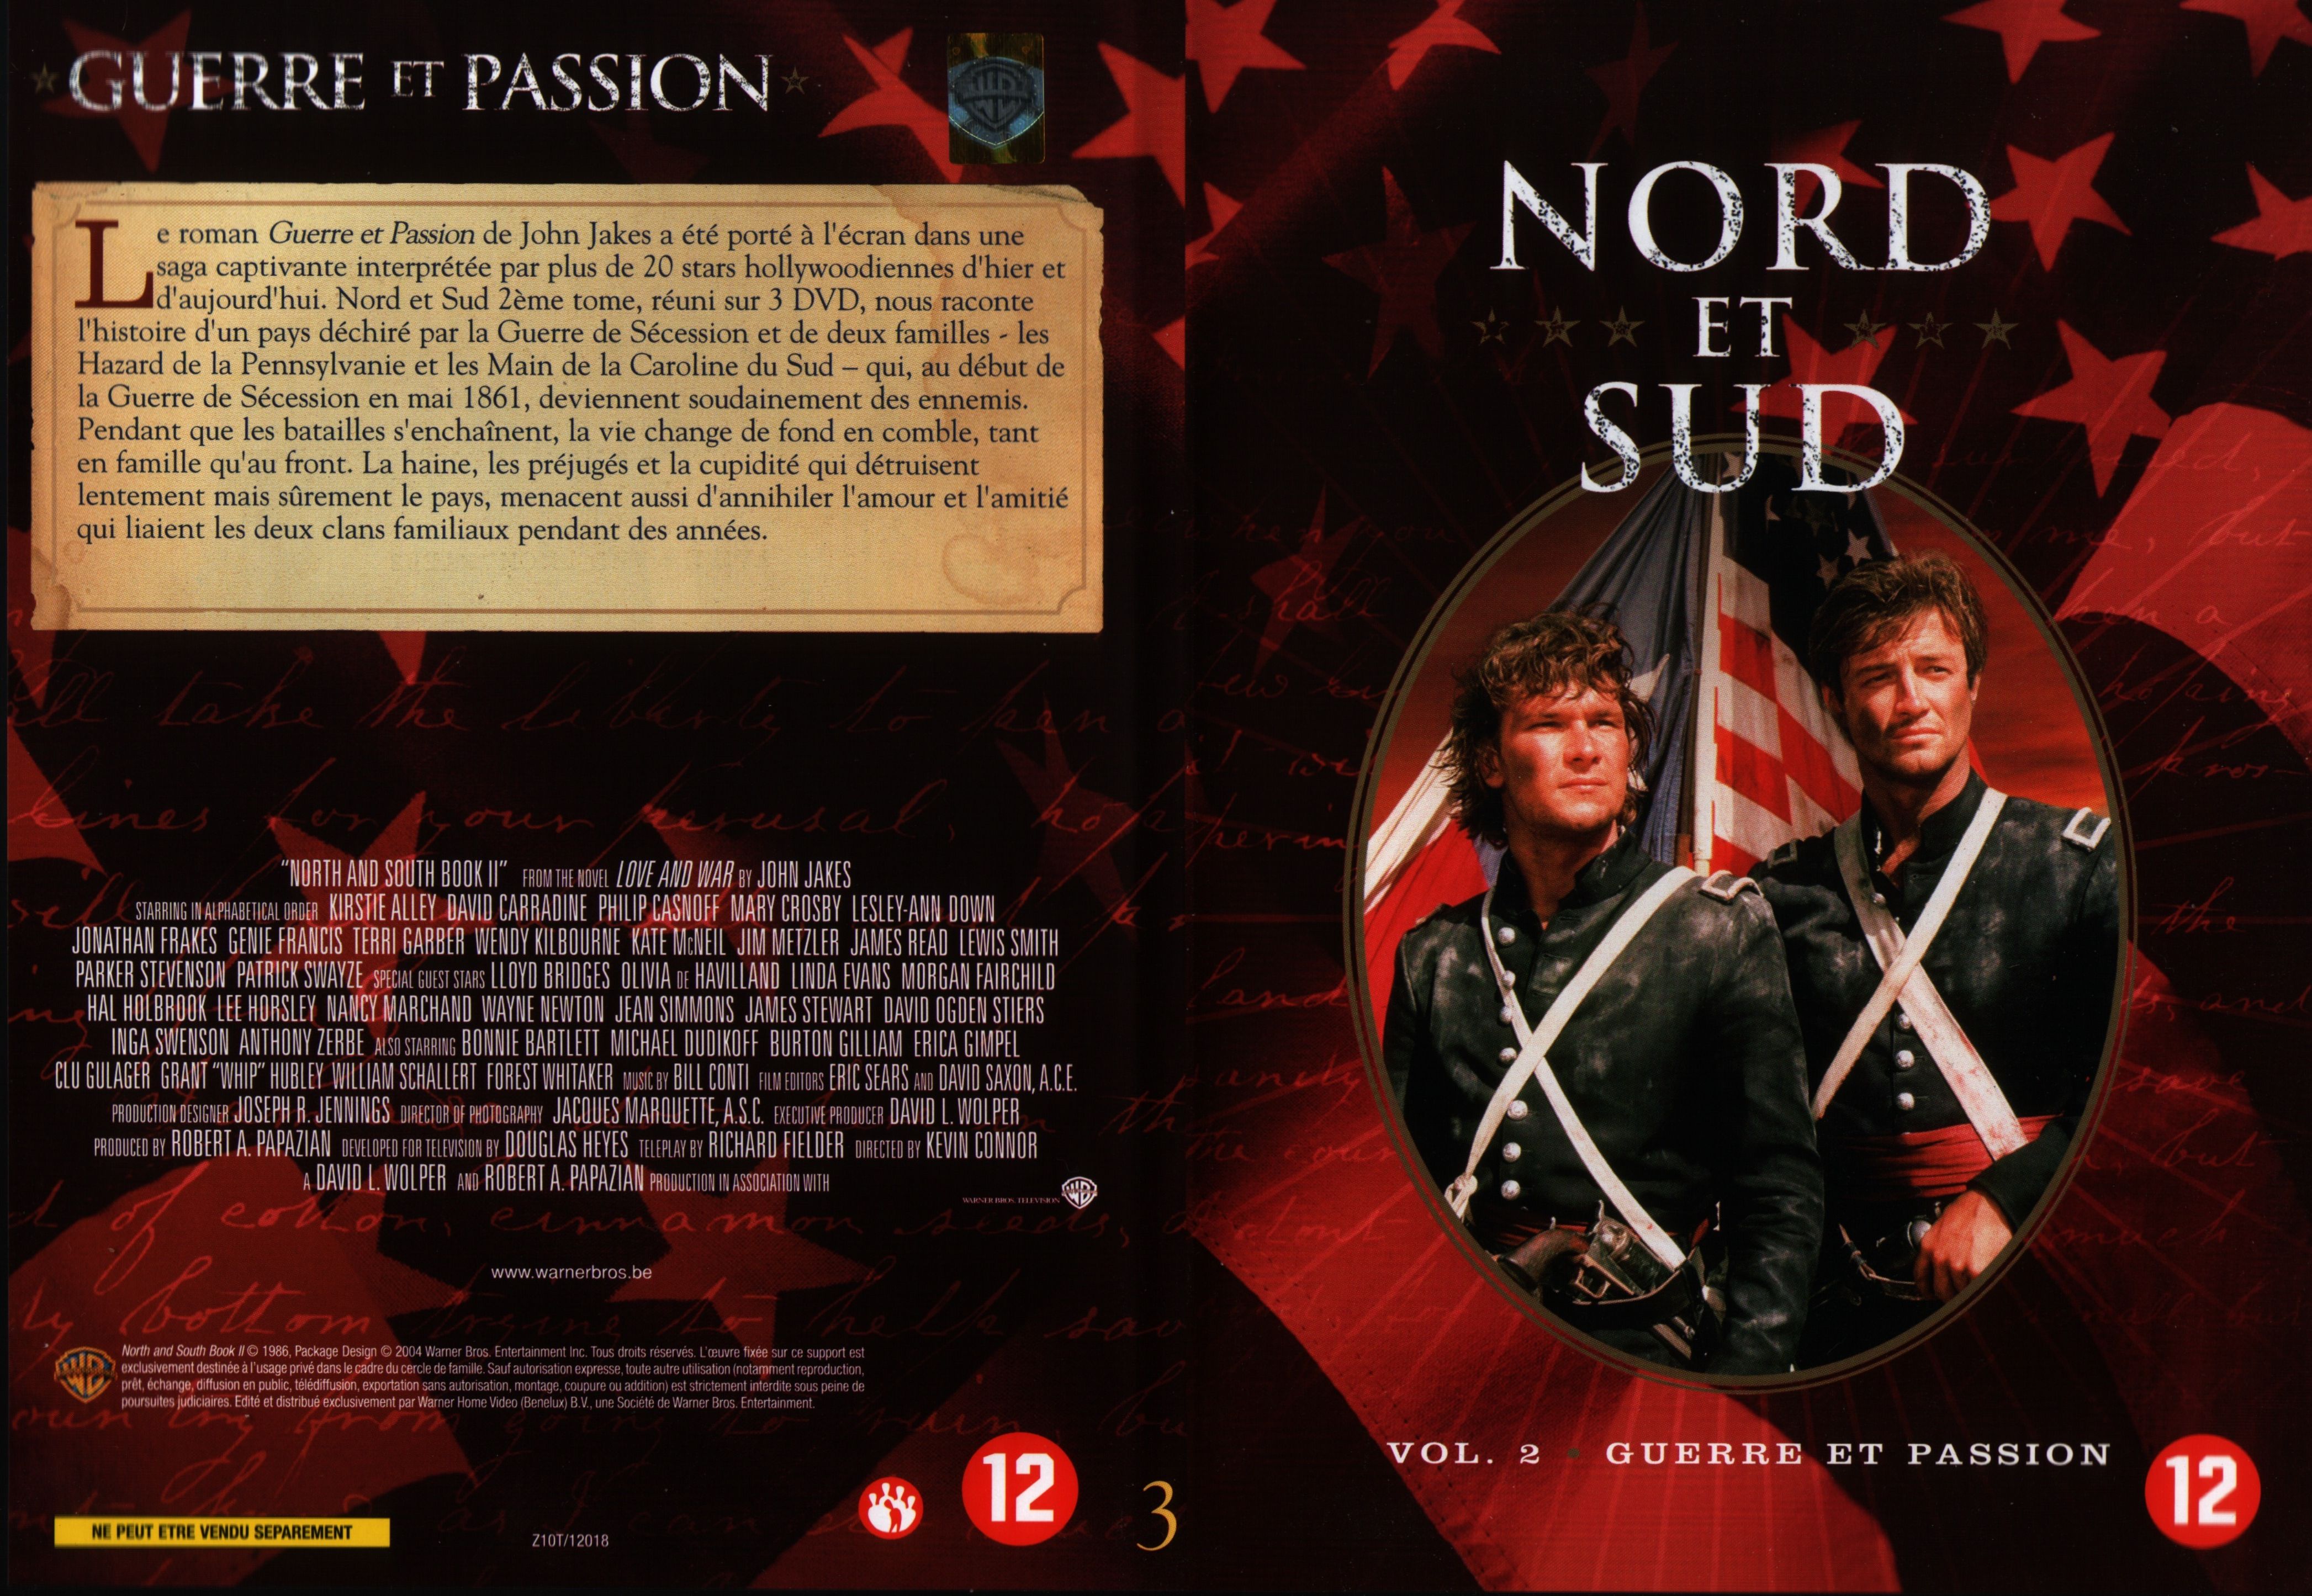 Jaquette DVD Nord et sud vol 2 dvd 3